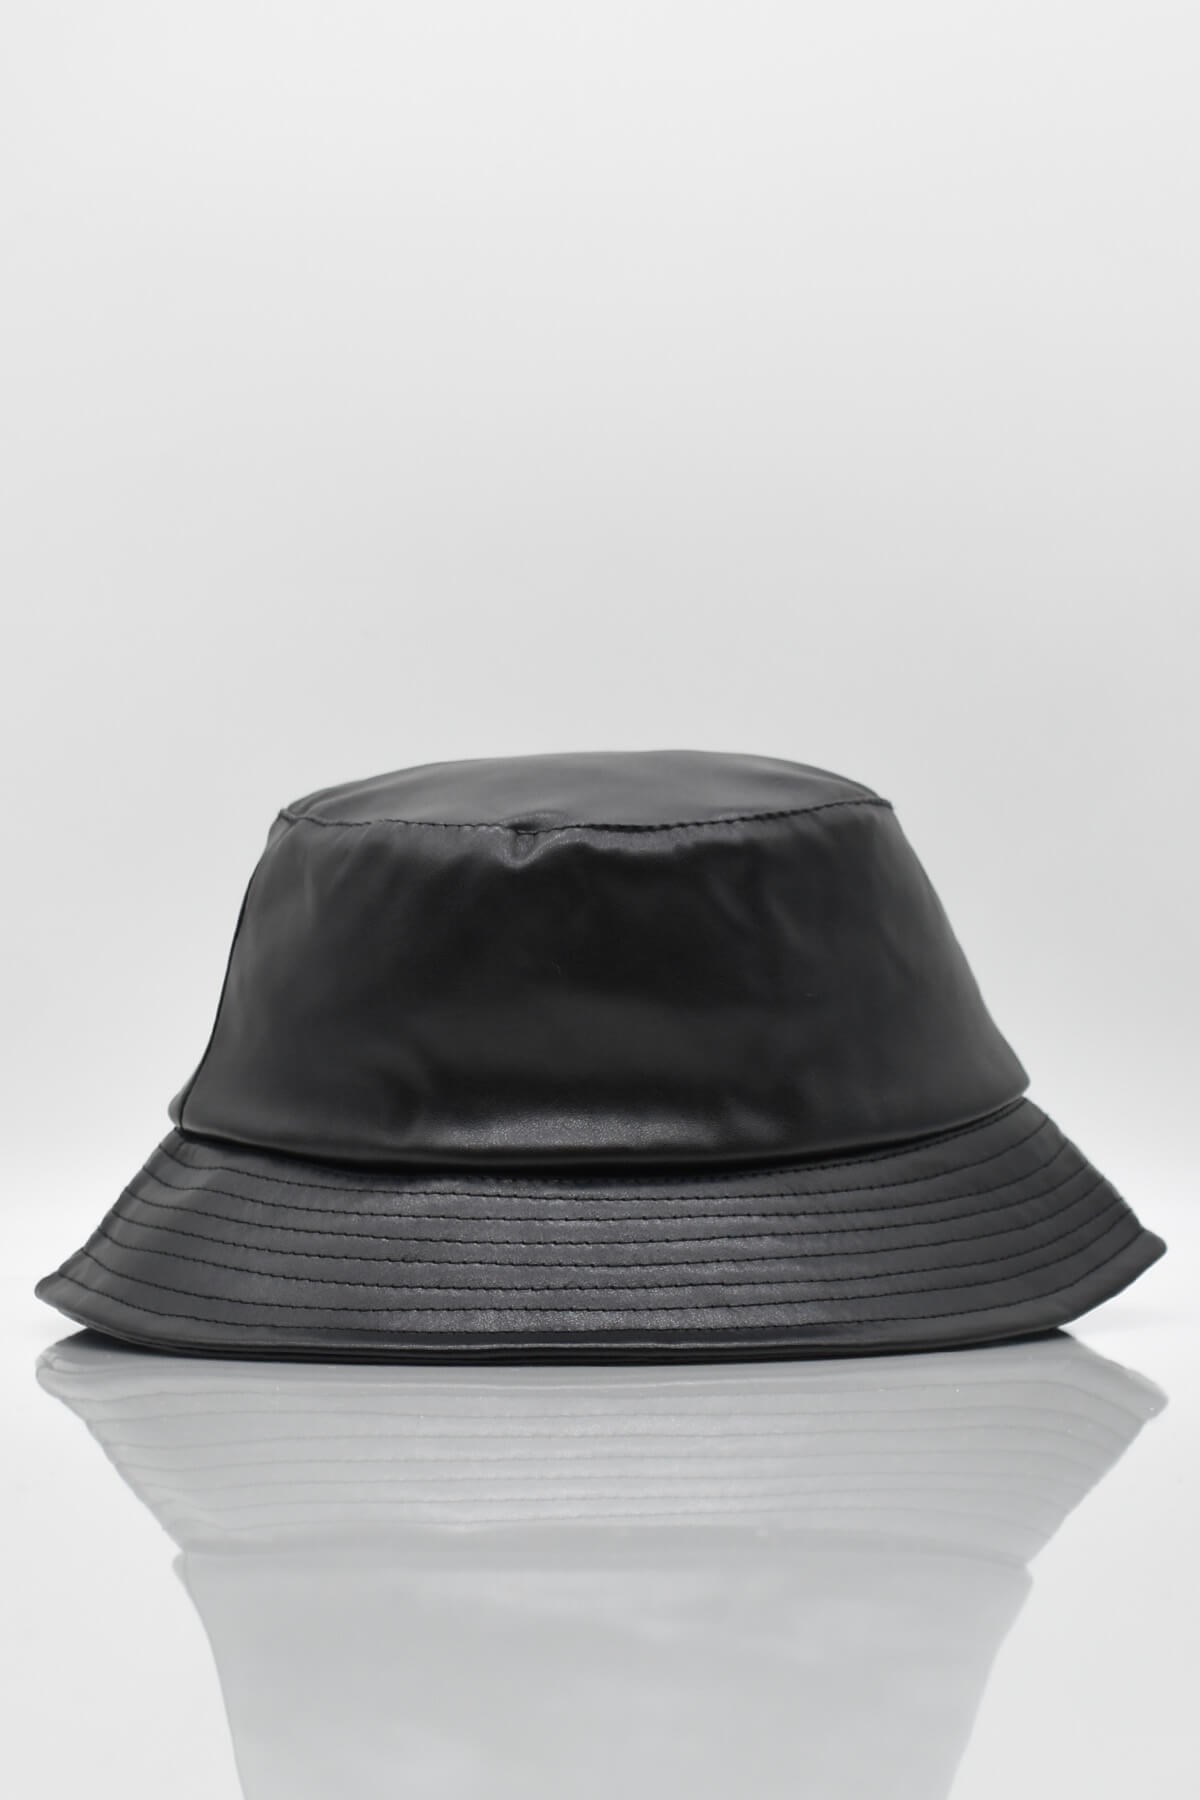 Külah Kadın Suni Deri Siyah Kese Şapka KLH7066